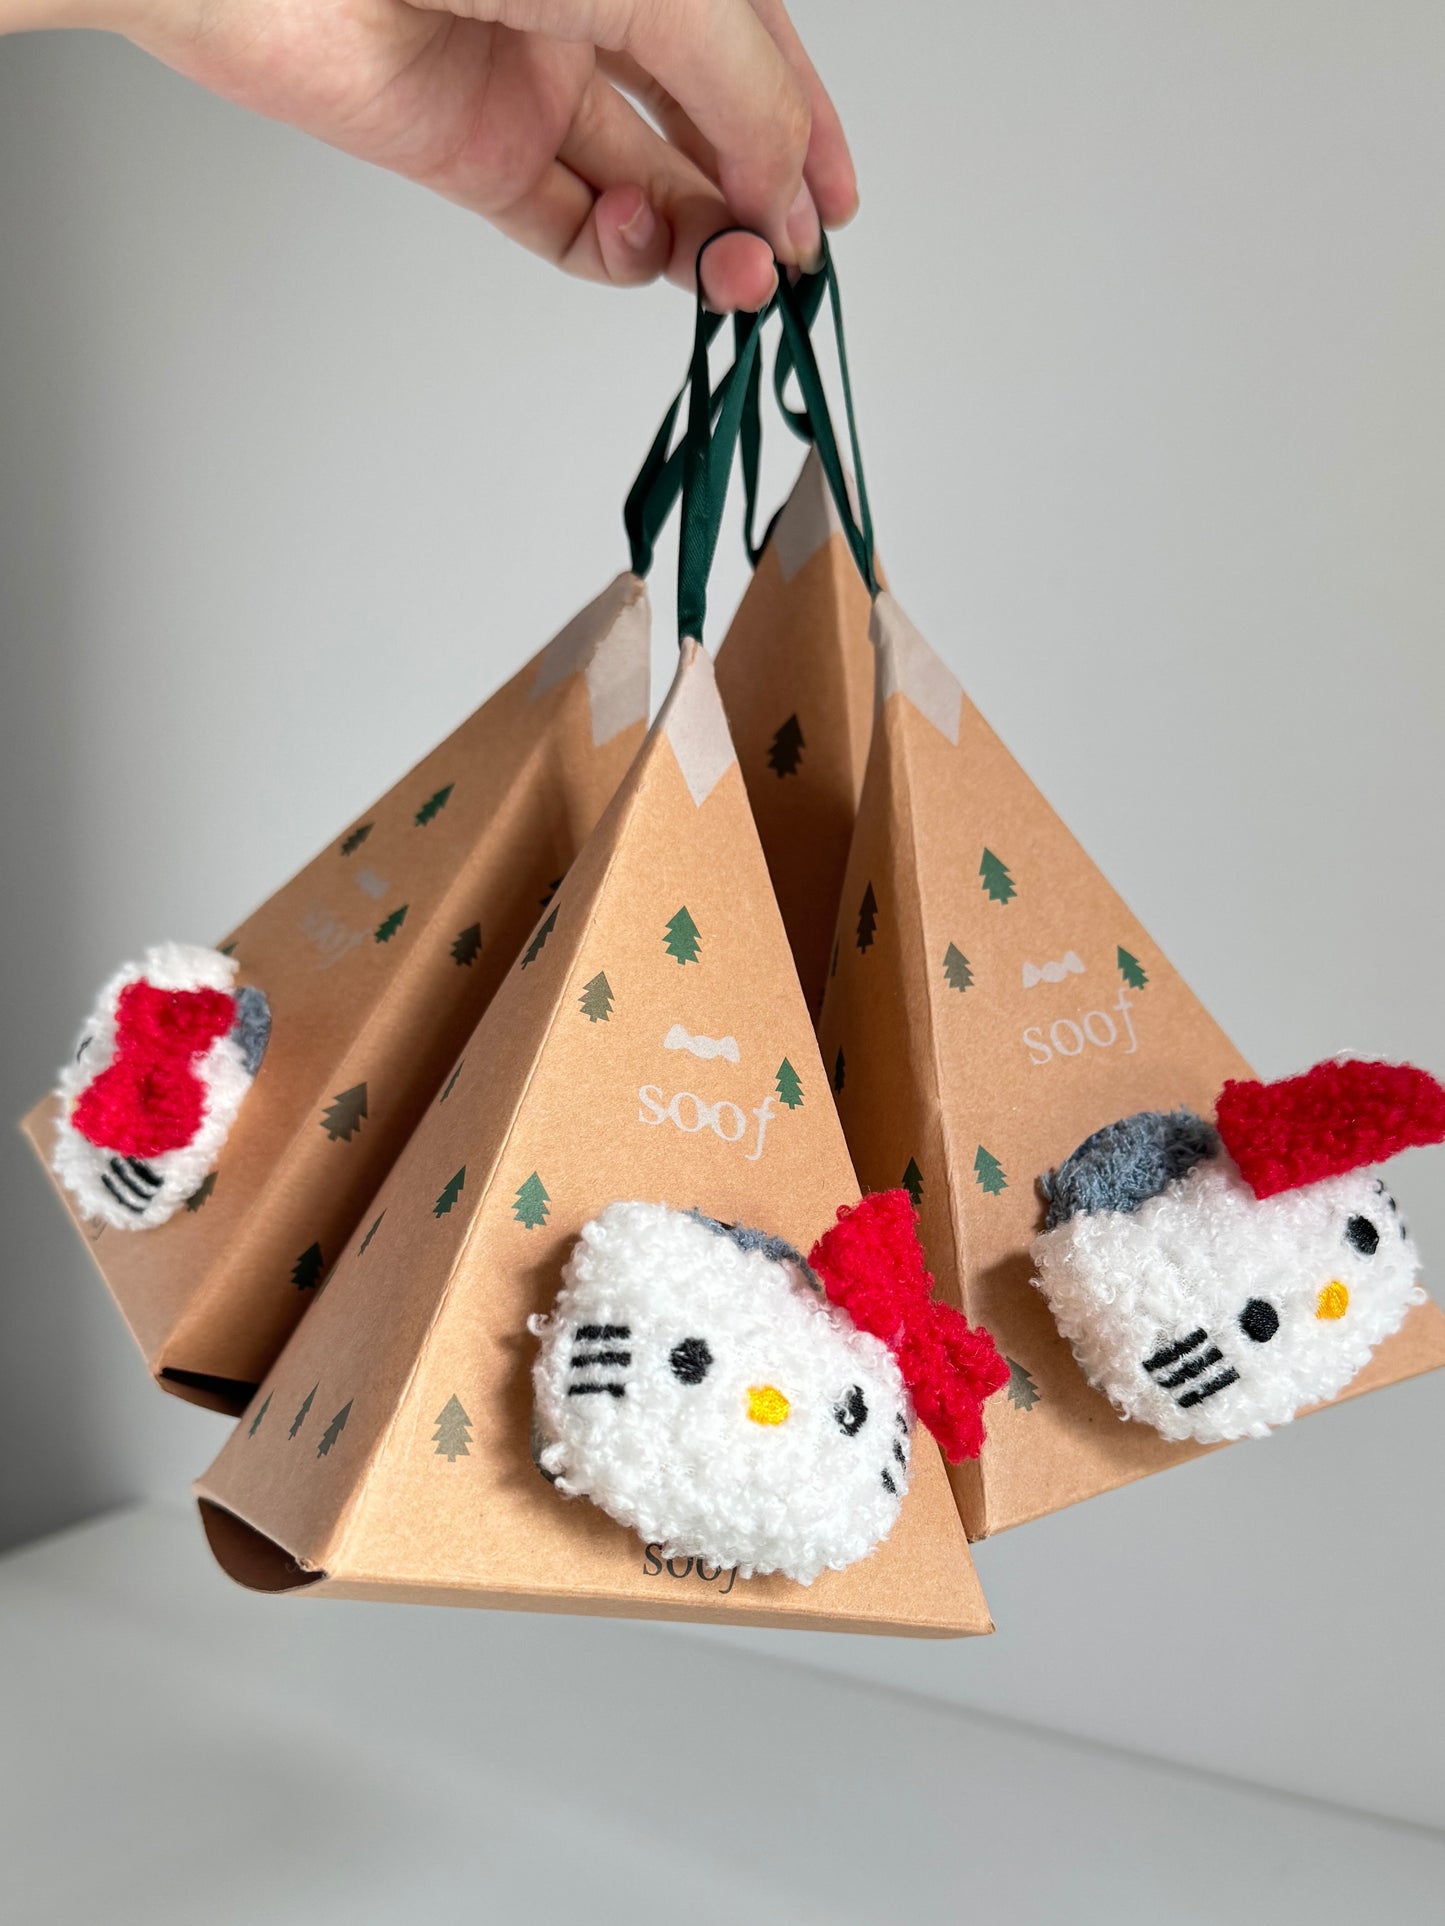 Hello kitty Socks Gift Box Christmas Gift